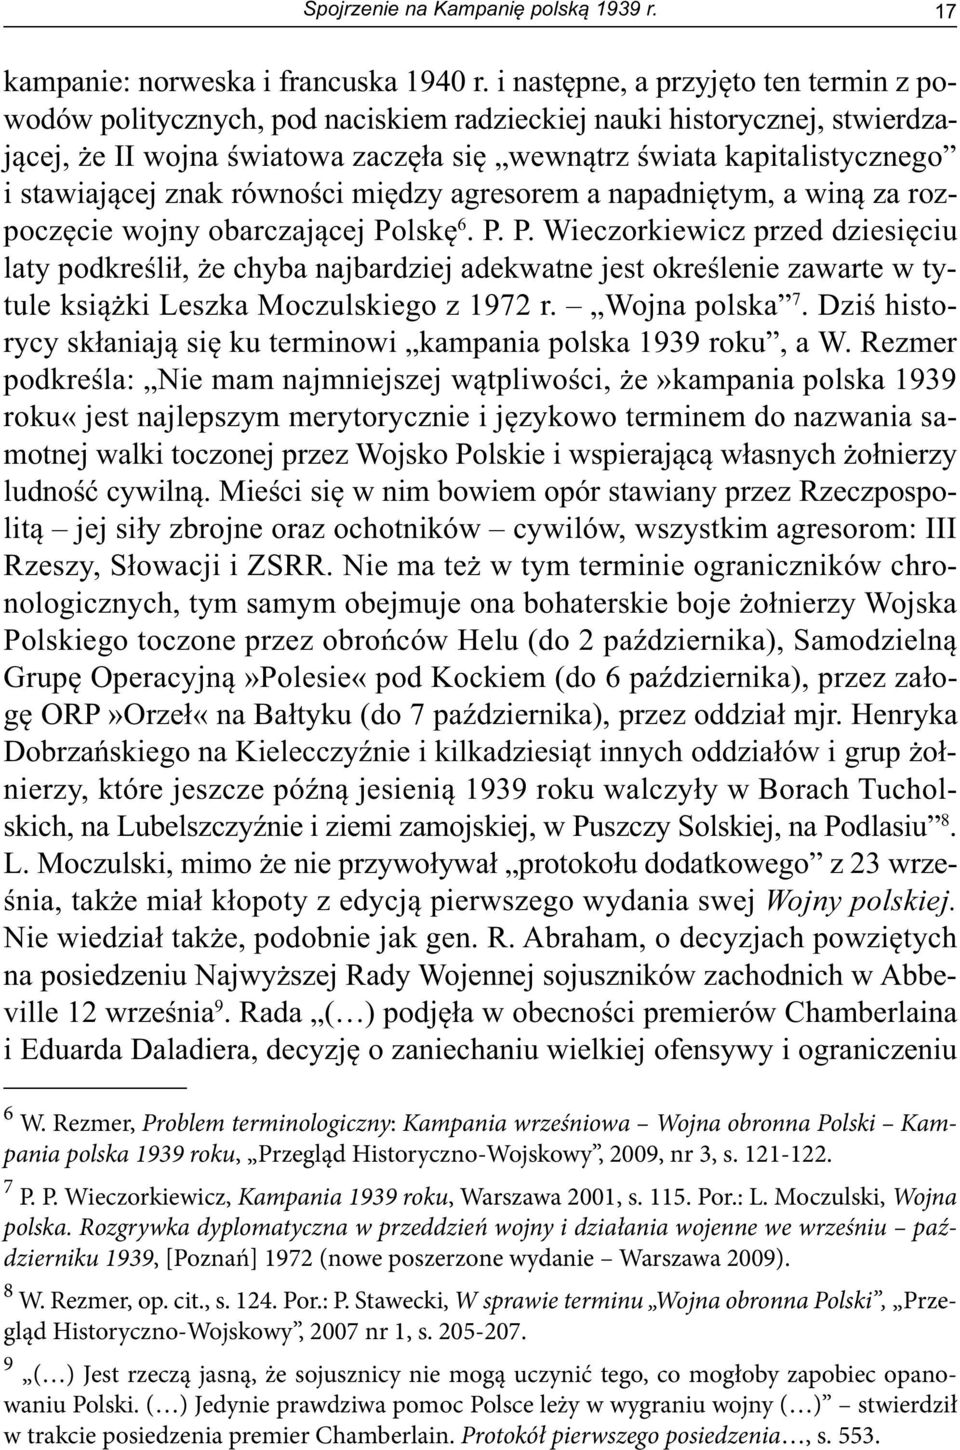 Rezmer, op. cit., s. 124. Por.: P. Stawecki, W sprawie terminu Wojna obronna Polski, Przegląd Historyczno-Wojskowy, 2007 nr 1, s. 205-207.